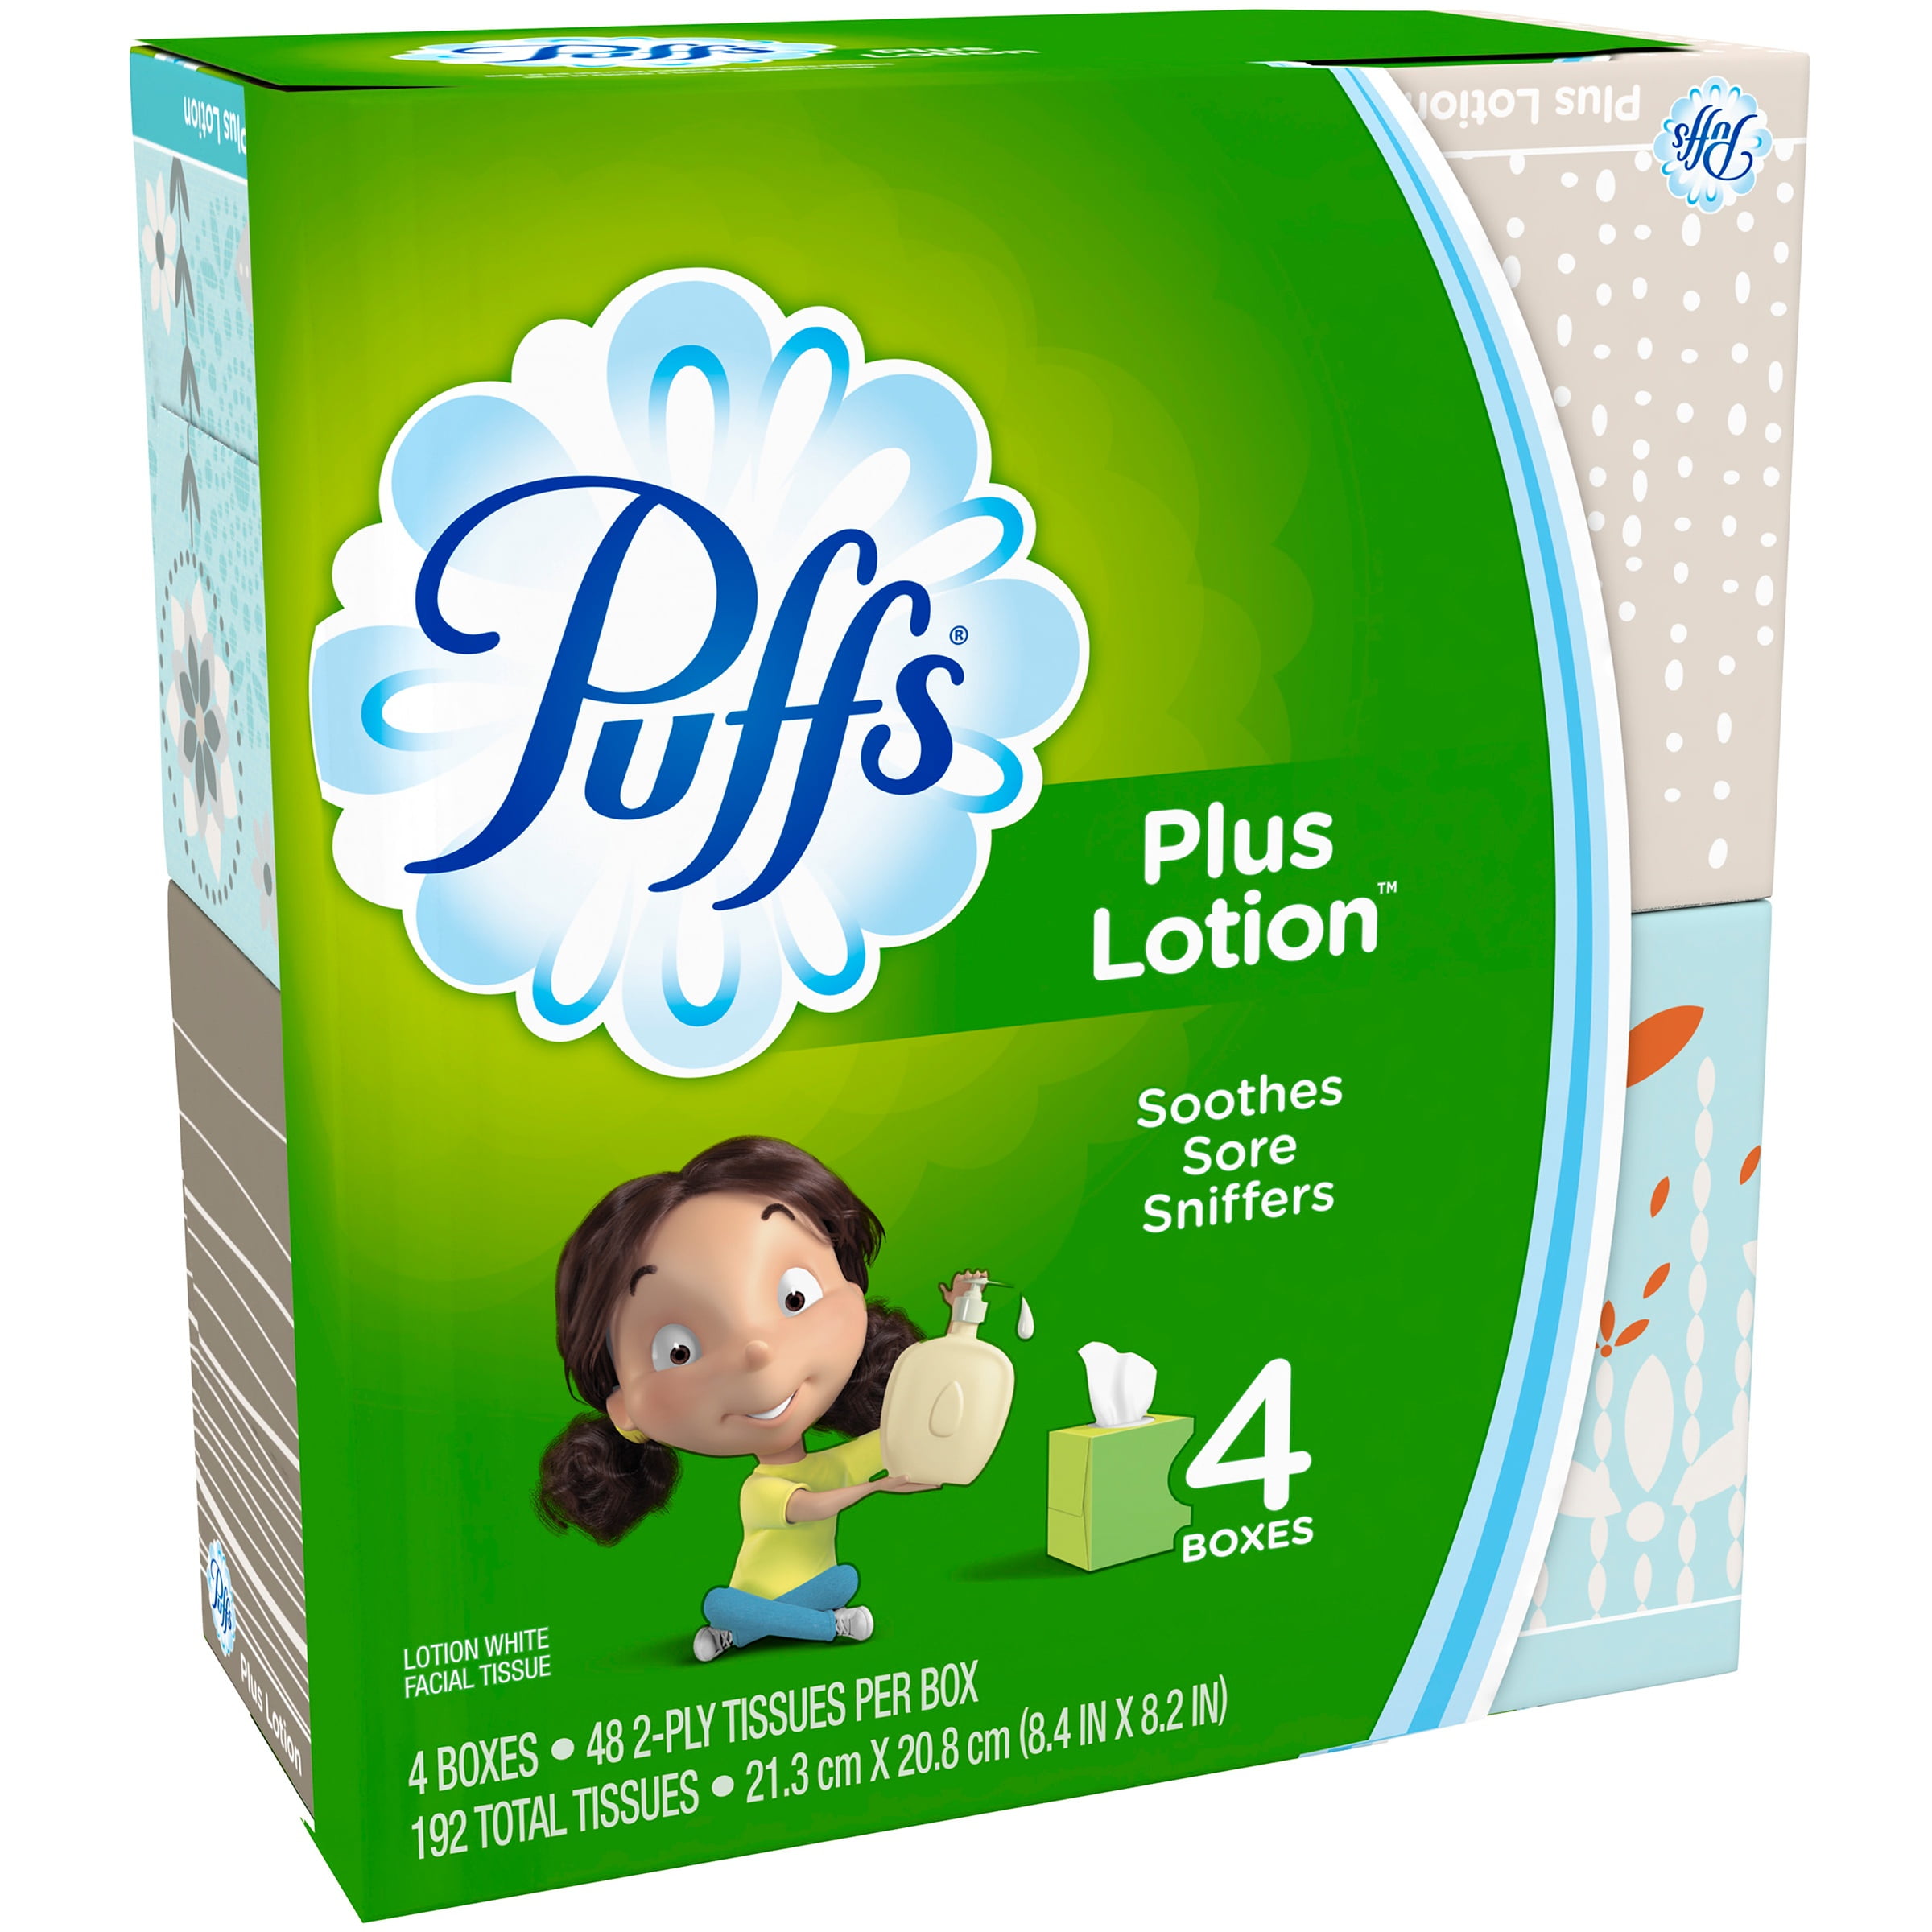 Puffs Plus Lotion Facial Tissue